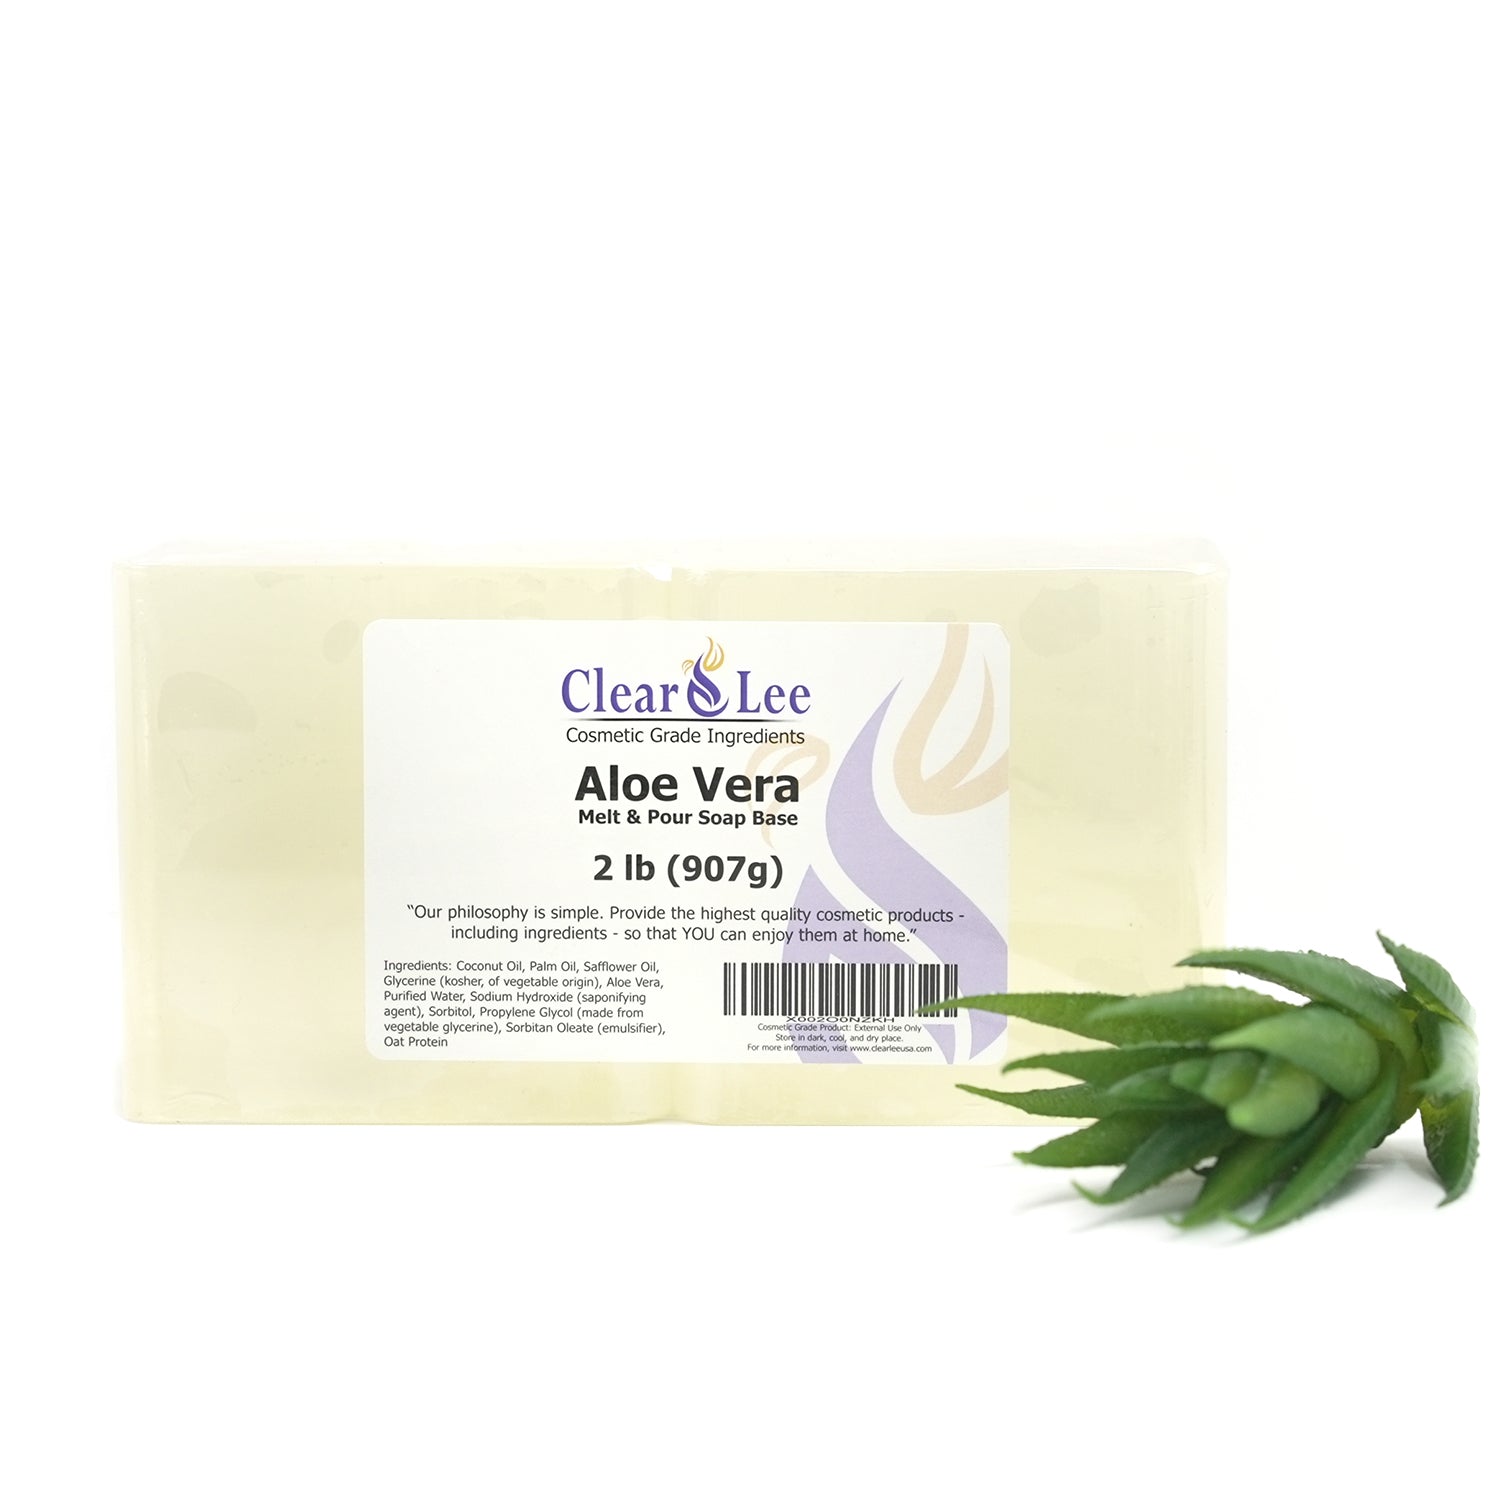 Skin Said Yes 5 Lb Aloe Soap Base - SLS/SLES free, No Palm Oil, Organic  Soap Base, Bulk Aloe Melt and Pour Soap Base, Natural Soap Base for Soap